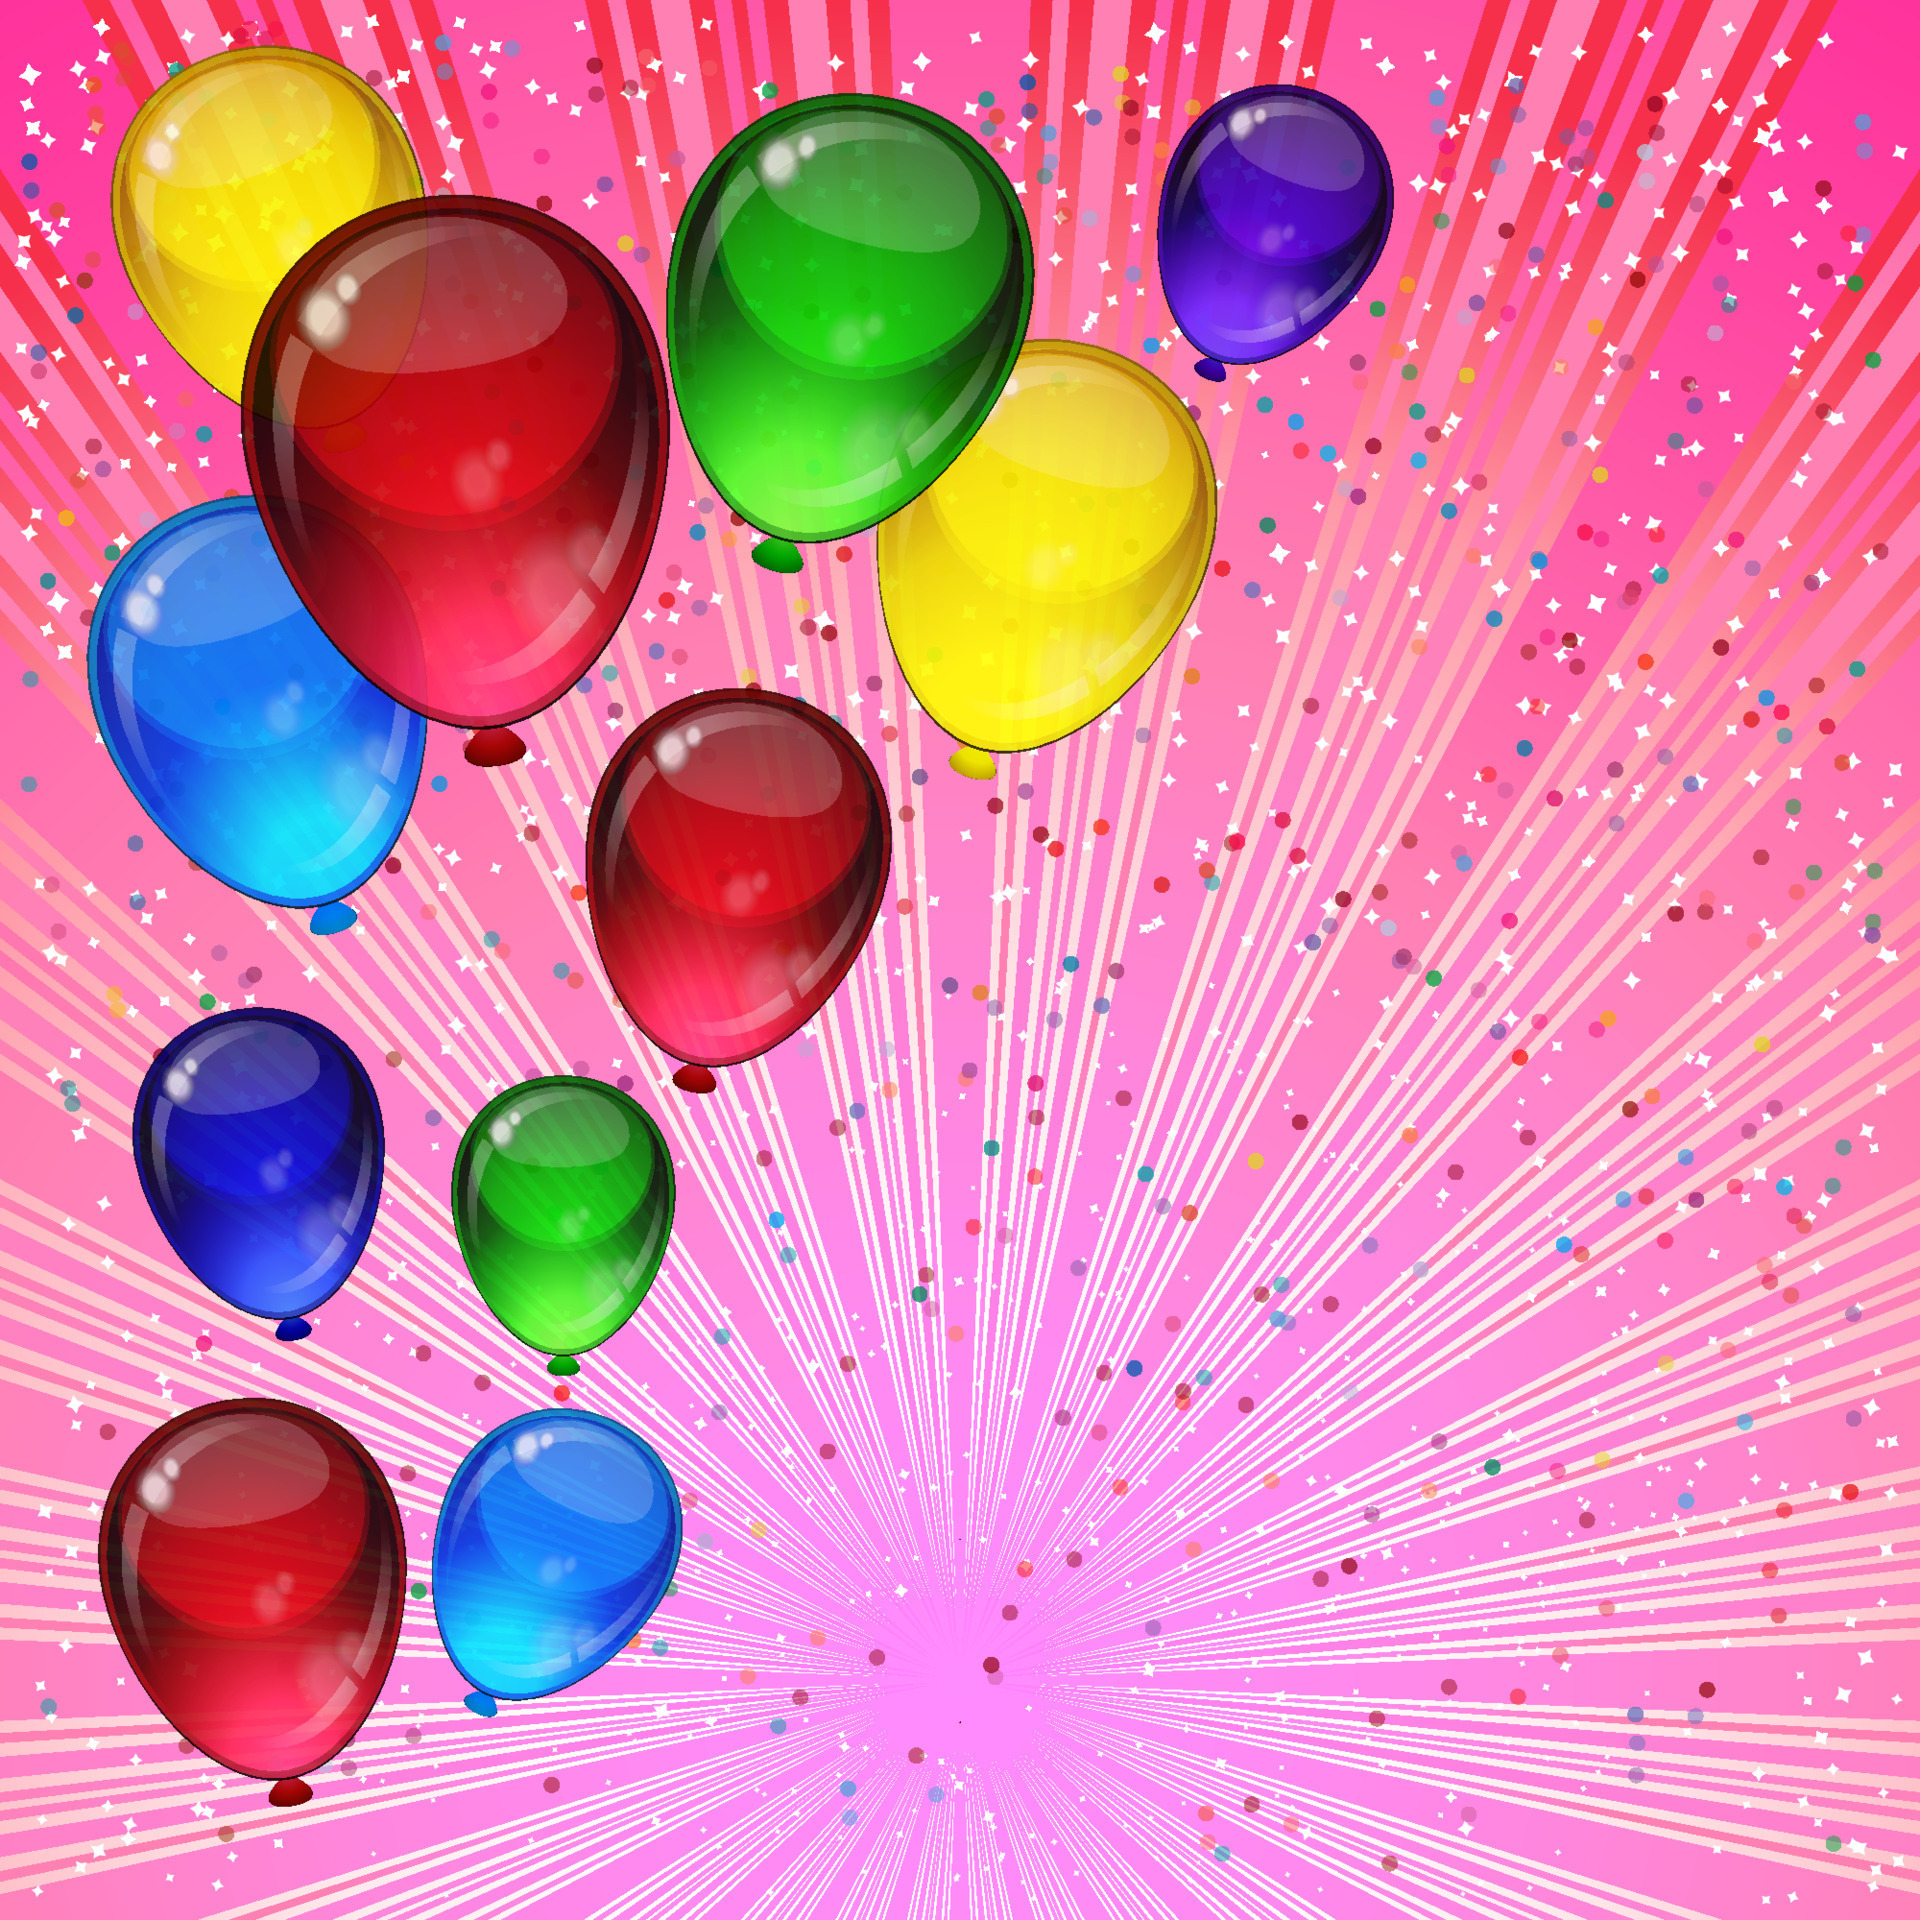 verdieping Stad bloem rijm verjaardagsfeestje vector achtergrond - kleurrijke feestelijke ballonnen,  confetti, linten vliegen voor vieringen kaart in roze achtergrond met  ruimte voor je tekst. 15864496 Vectorkunst bij Vecteezy